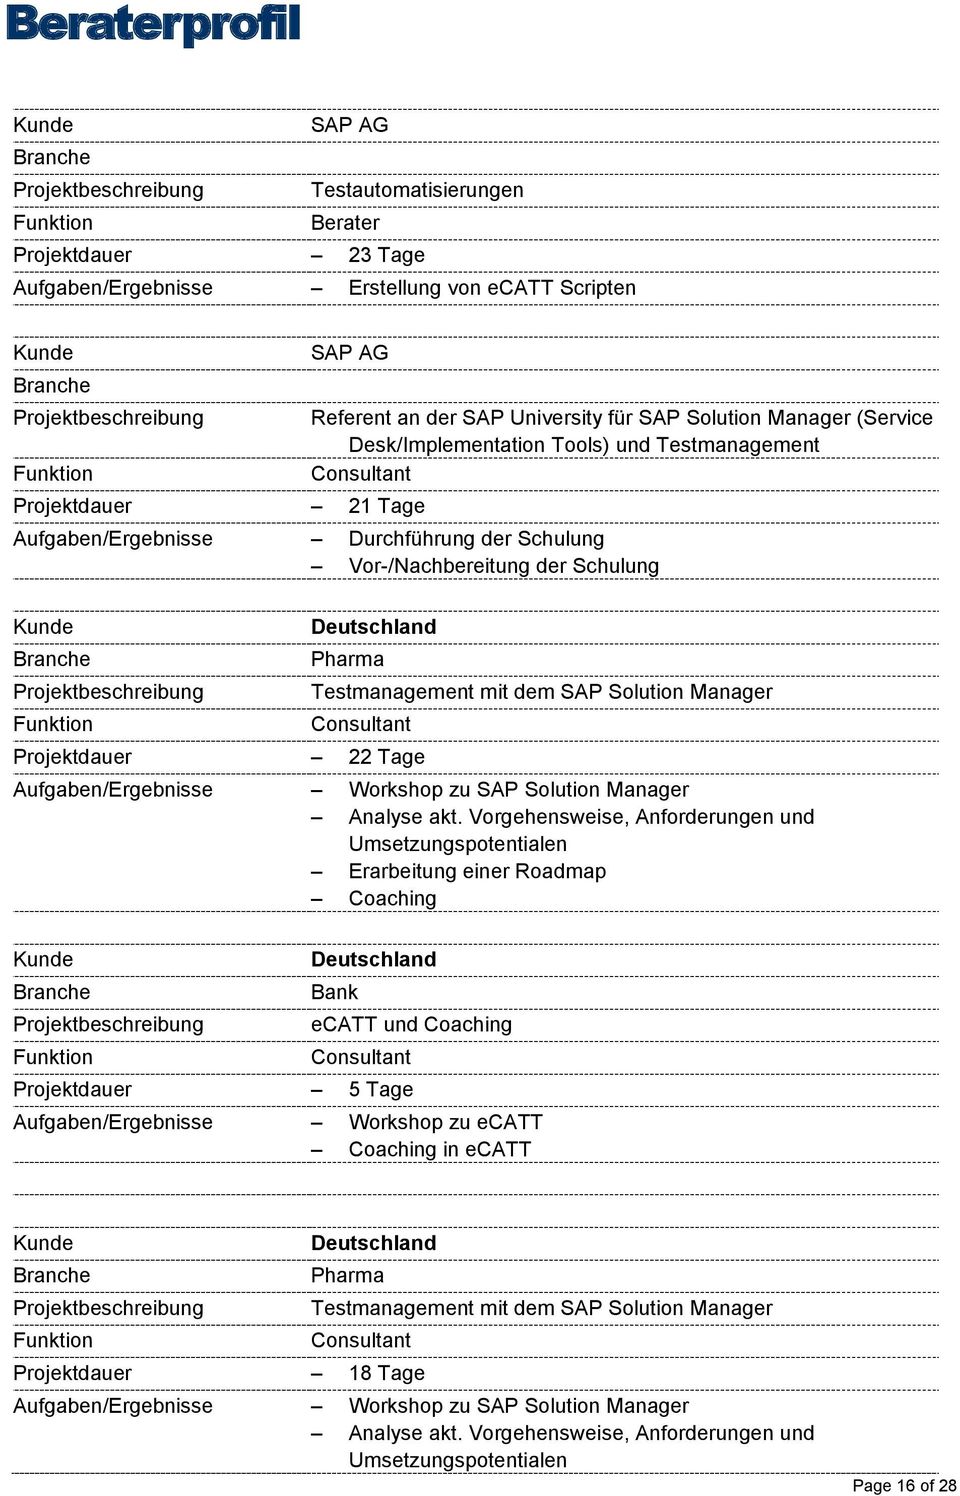 SAP Solution Manager Projektdauer 22 Tage Aufgaben/Ergebnisse Workshop zu SAP Solution Manager Erarbeitung einer Roadmap Bank ecatt und Coaching Projektdauer 5 Tage